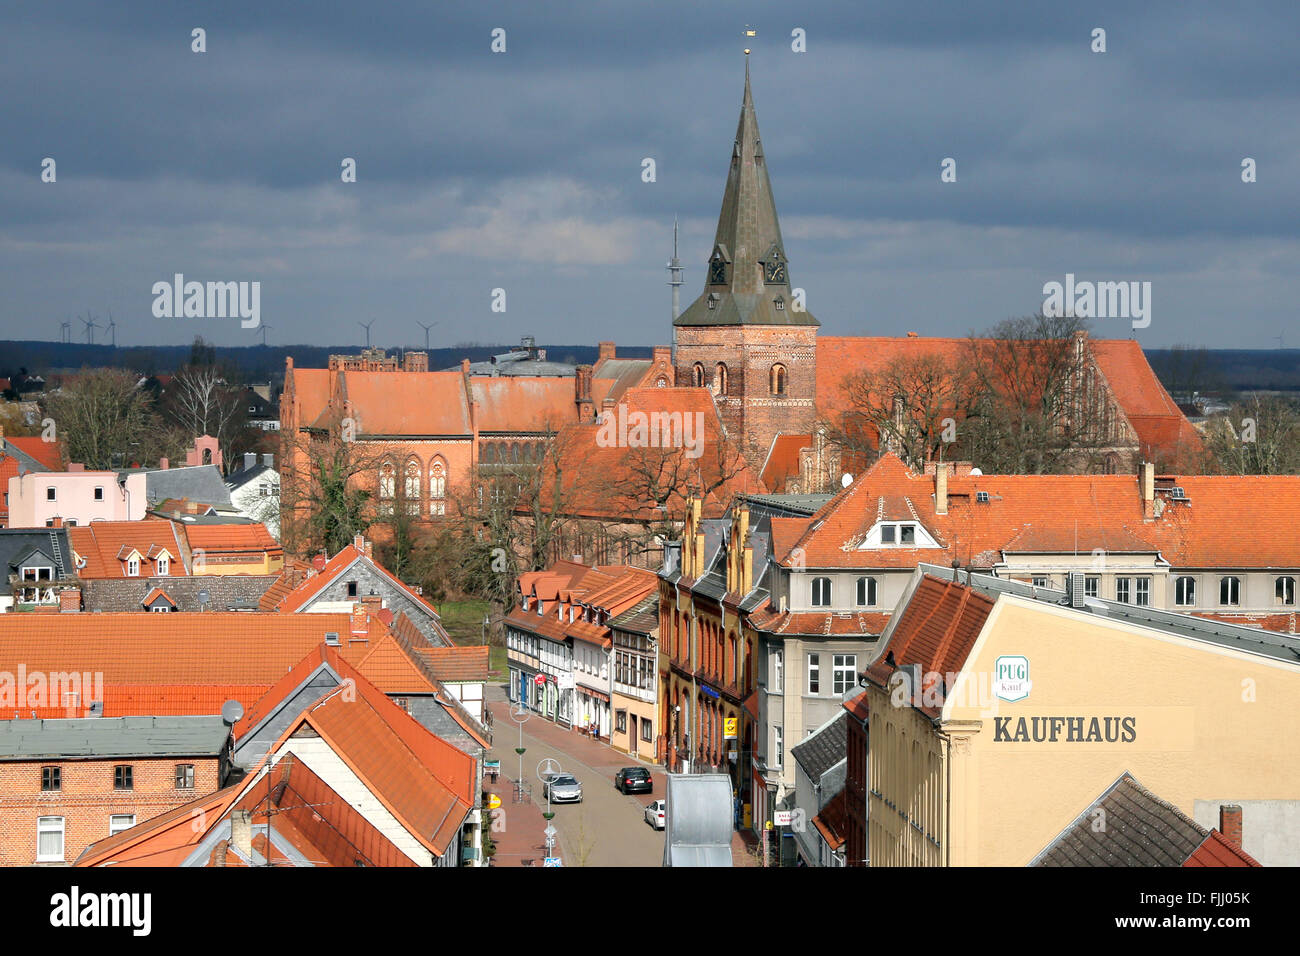 Vieille ville de à Salzwedel avec l'église St Mary, Altmark, Sachsen Anhalt, Allemagne, Europe Banque D'Images